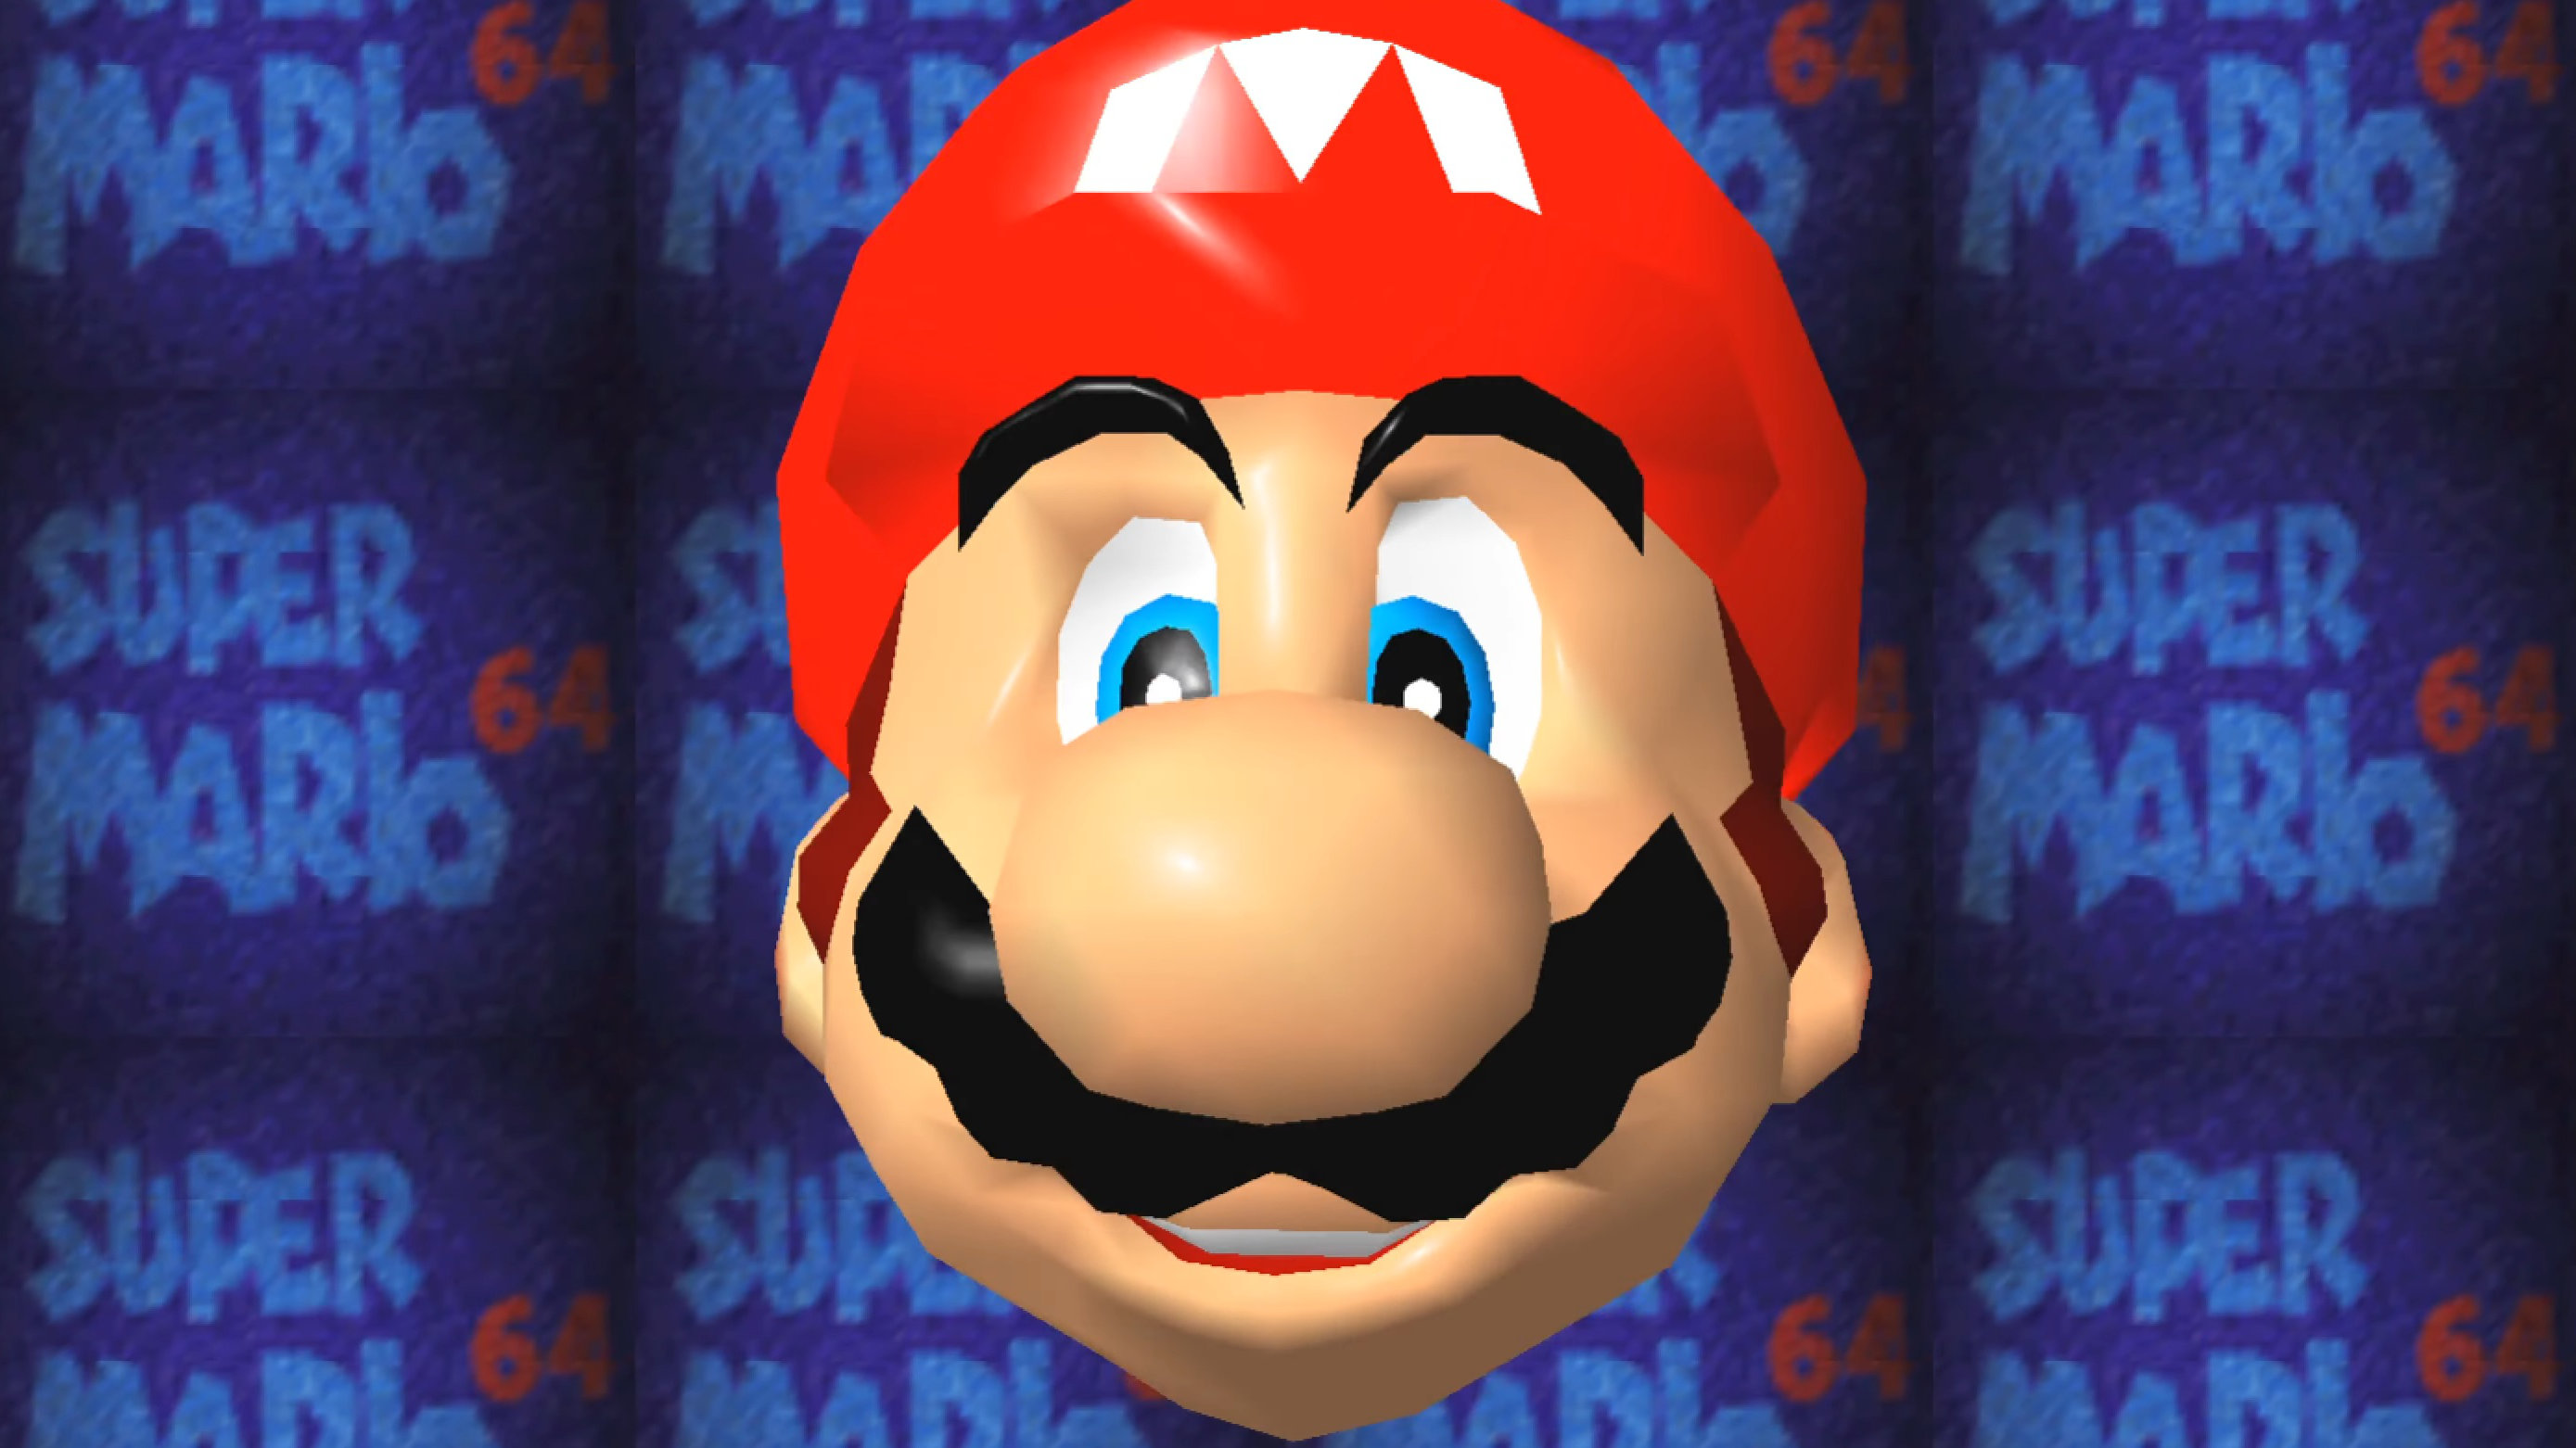 Mario's face from Mario 64